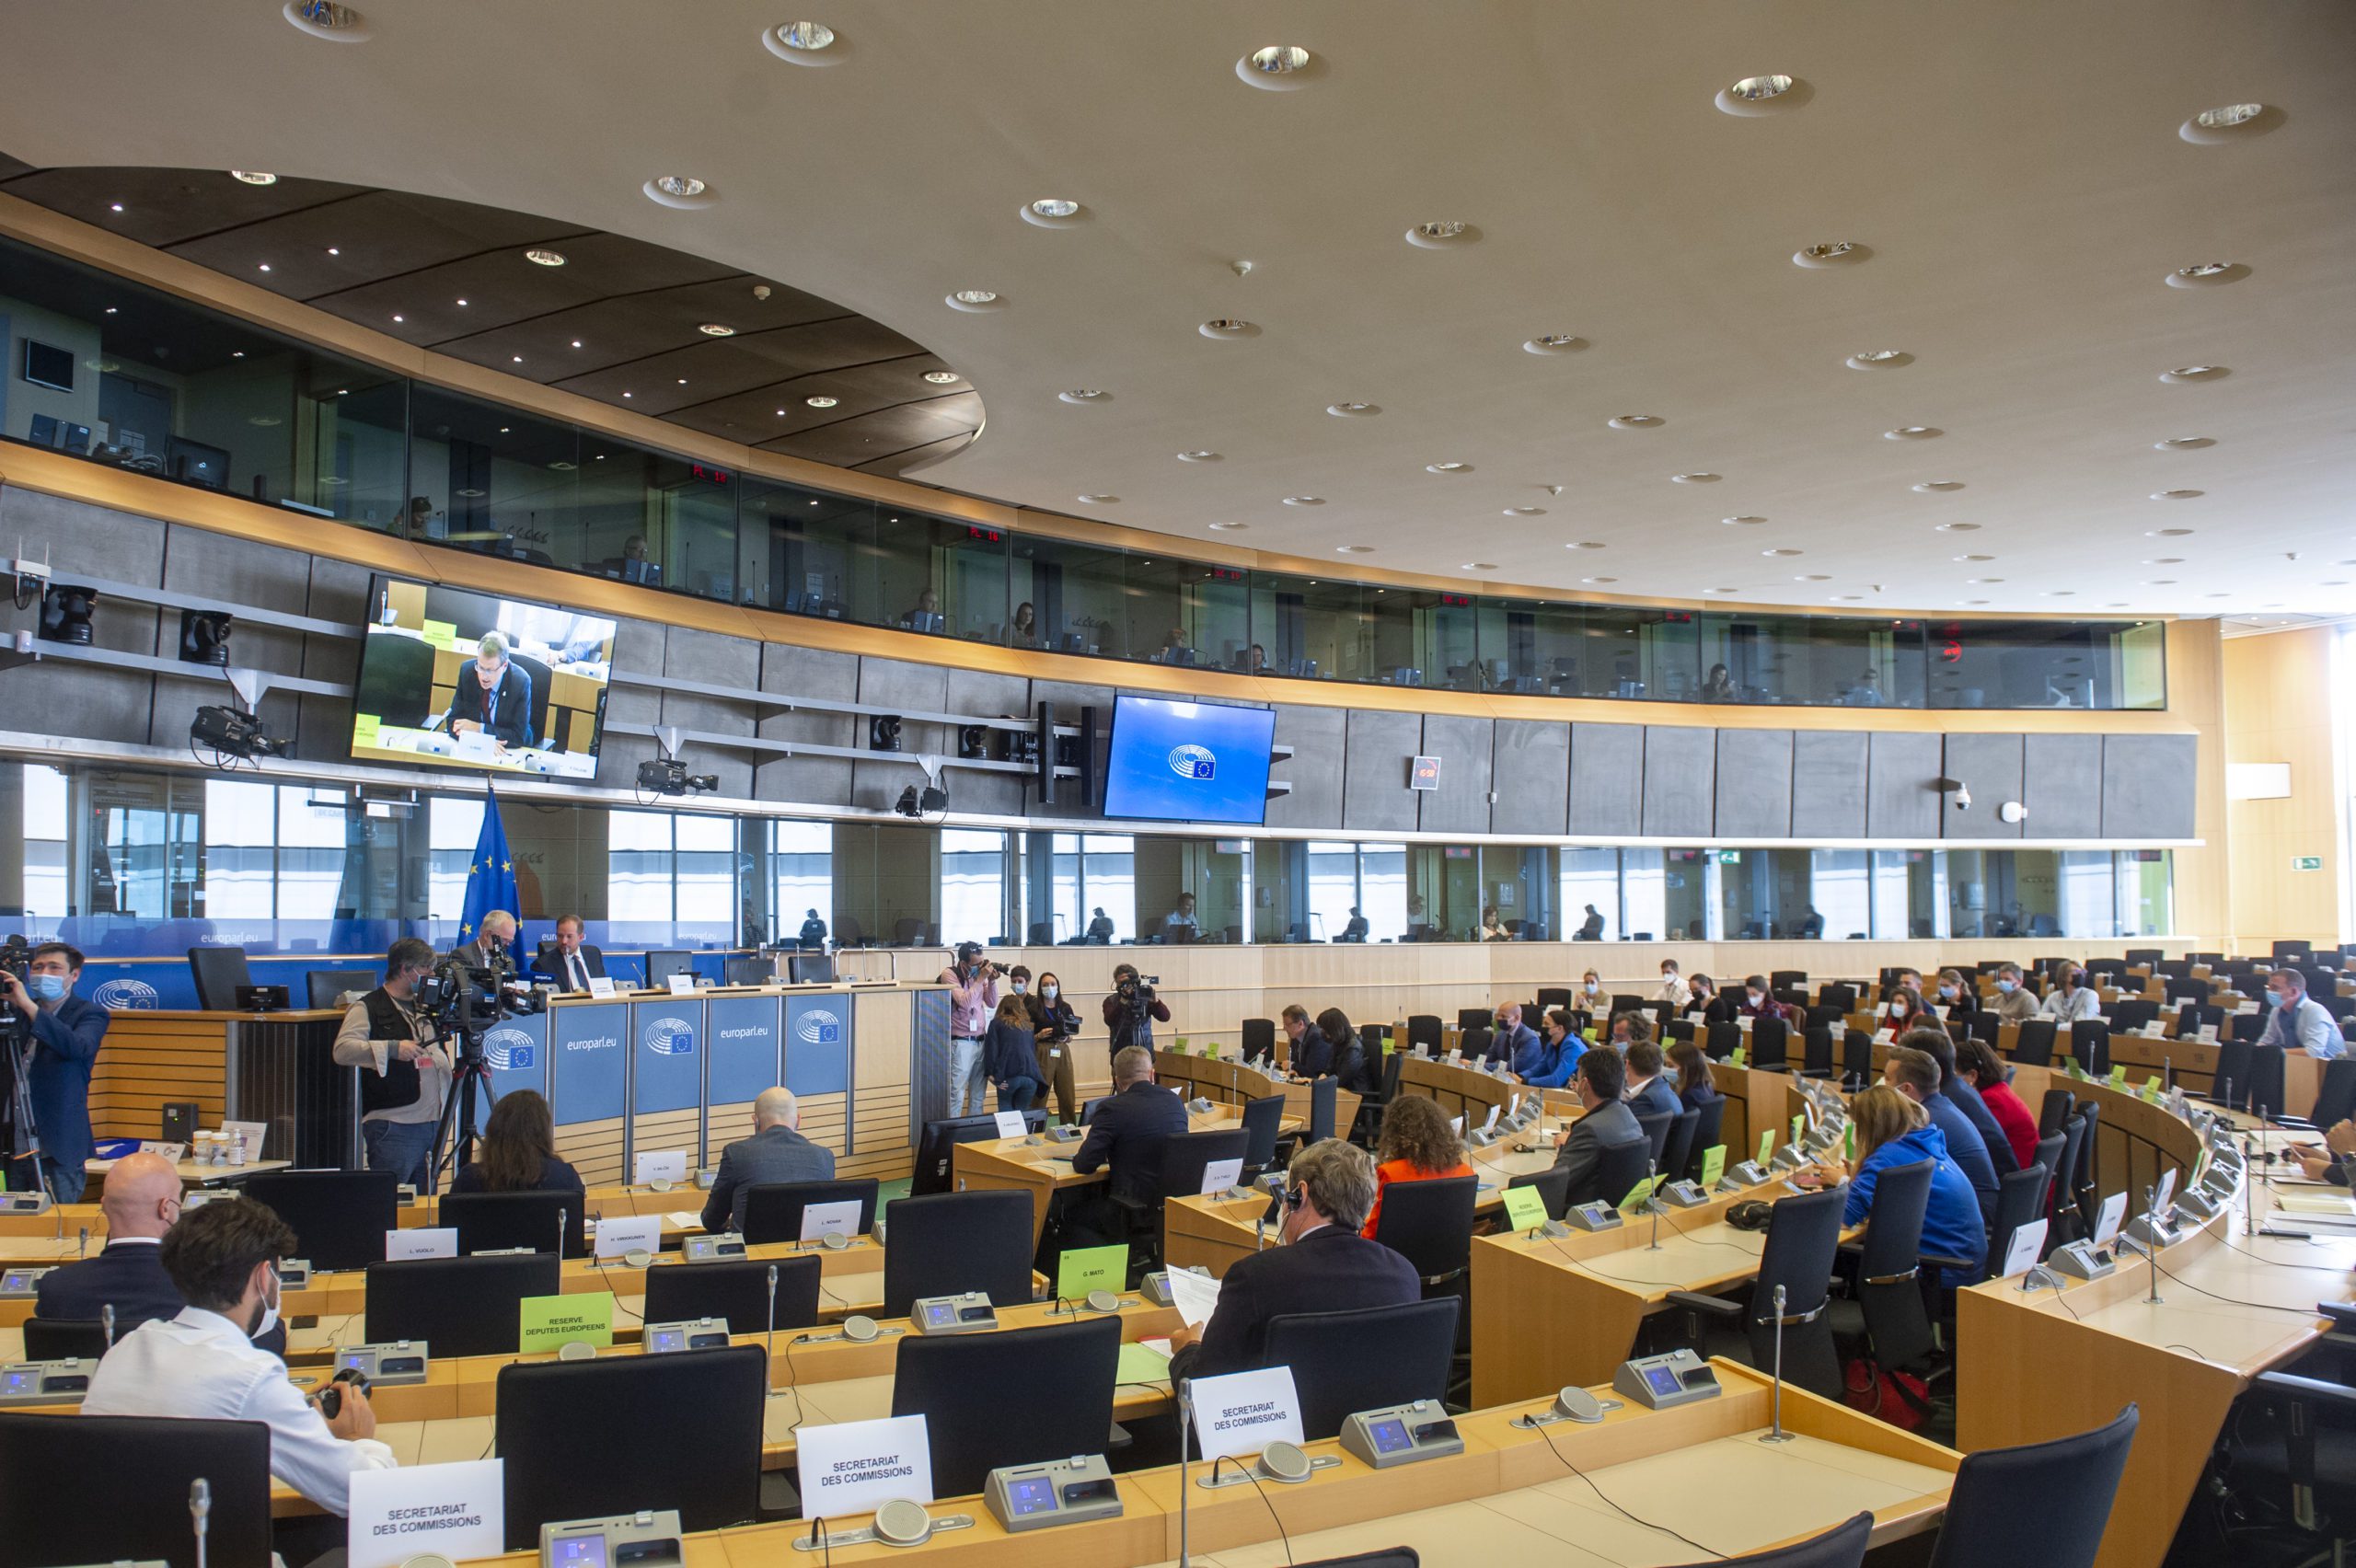 Παρακολουθήσεις: Έλληνες αξιωματούχοι και δημοσιογράφοι στο Ευρωπαϊκό Κοινοβούλιο (Live μετάδοση της συνεδρίασης)